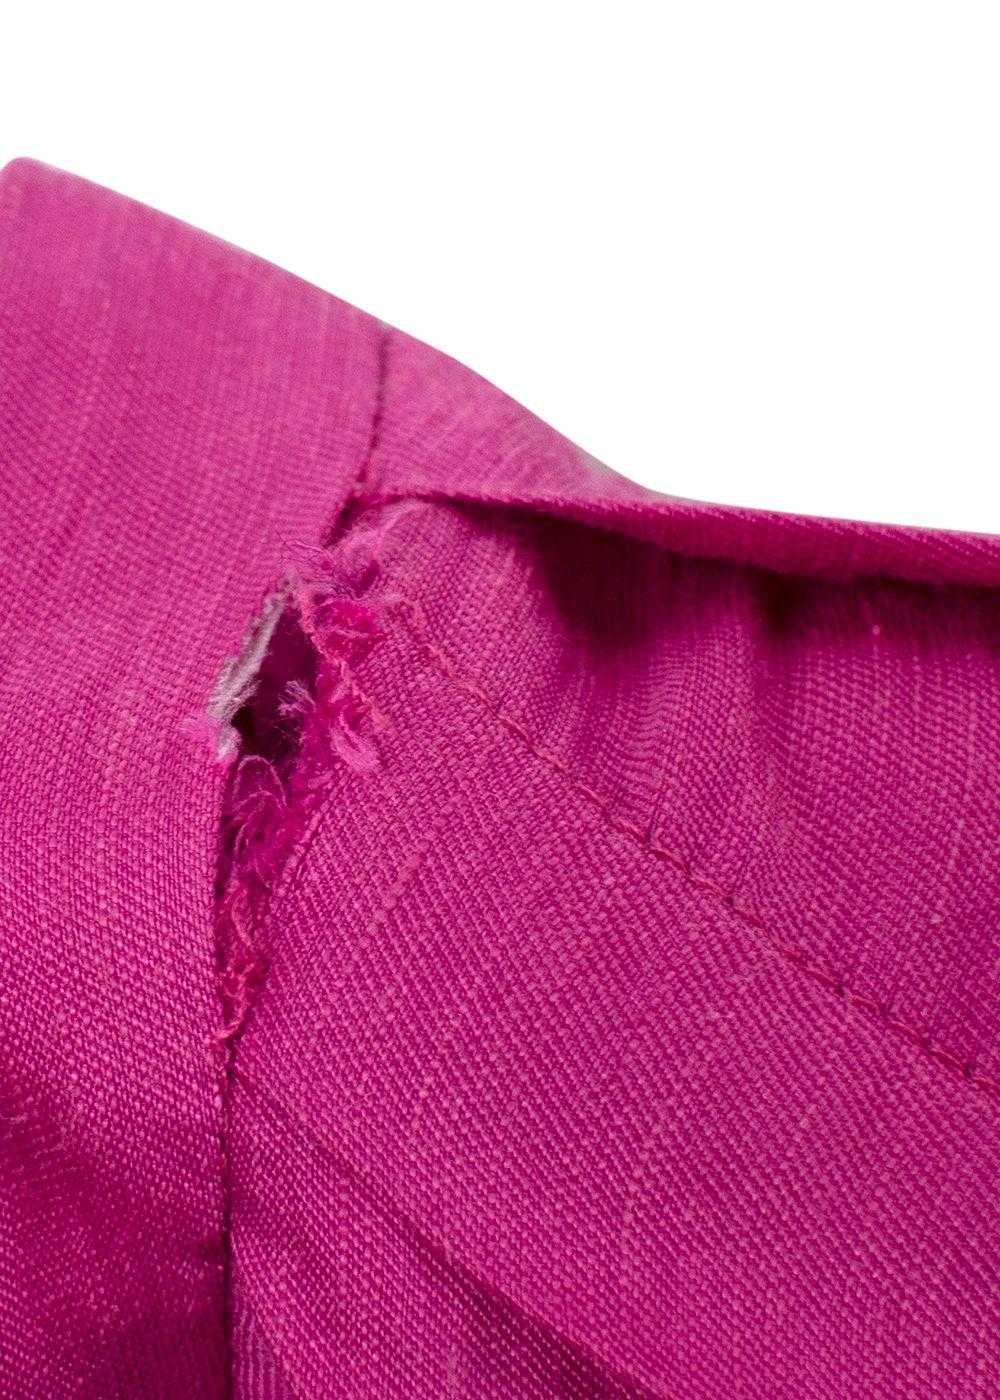 Acler Acler Linen-Blend Cranhurst Midi Dress - image 9